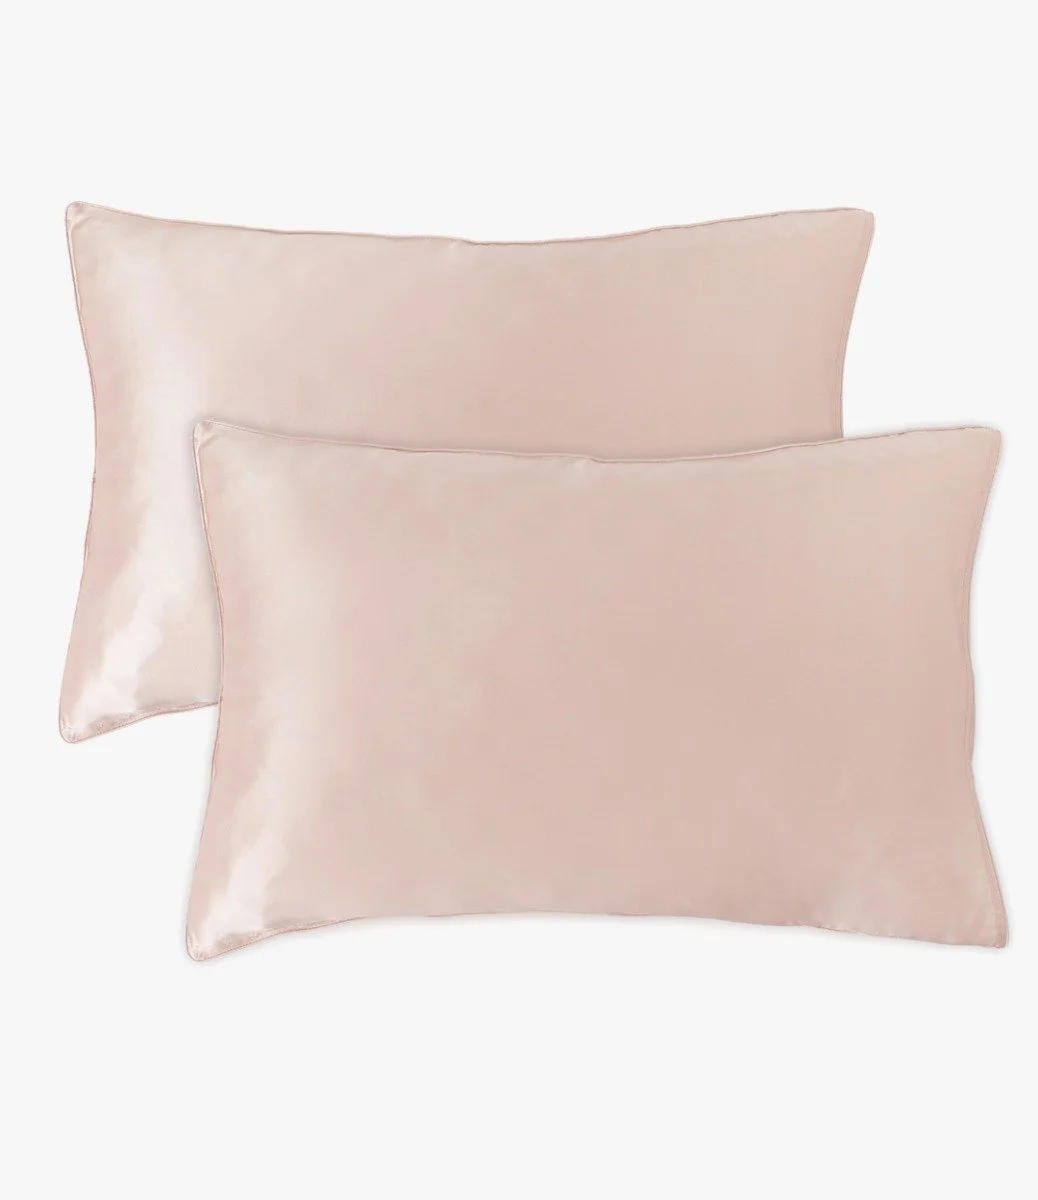 Queen Mulberry Silk Pillowcases